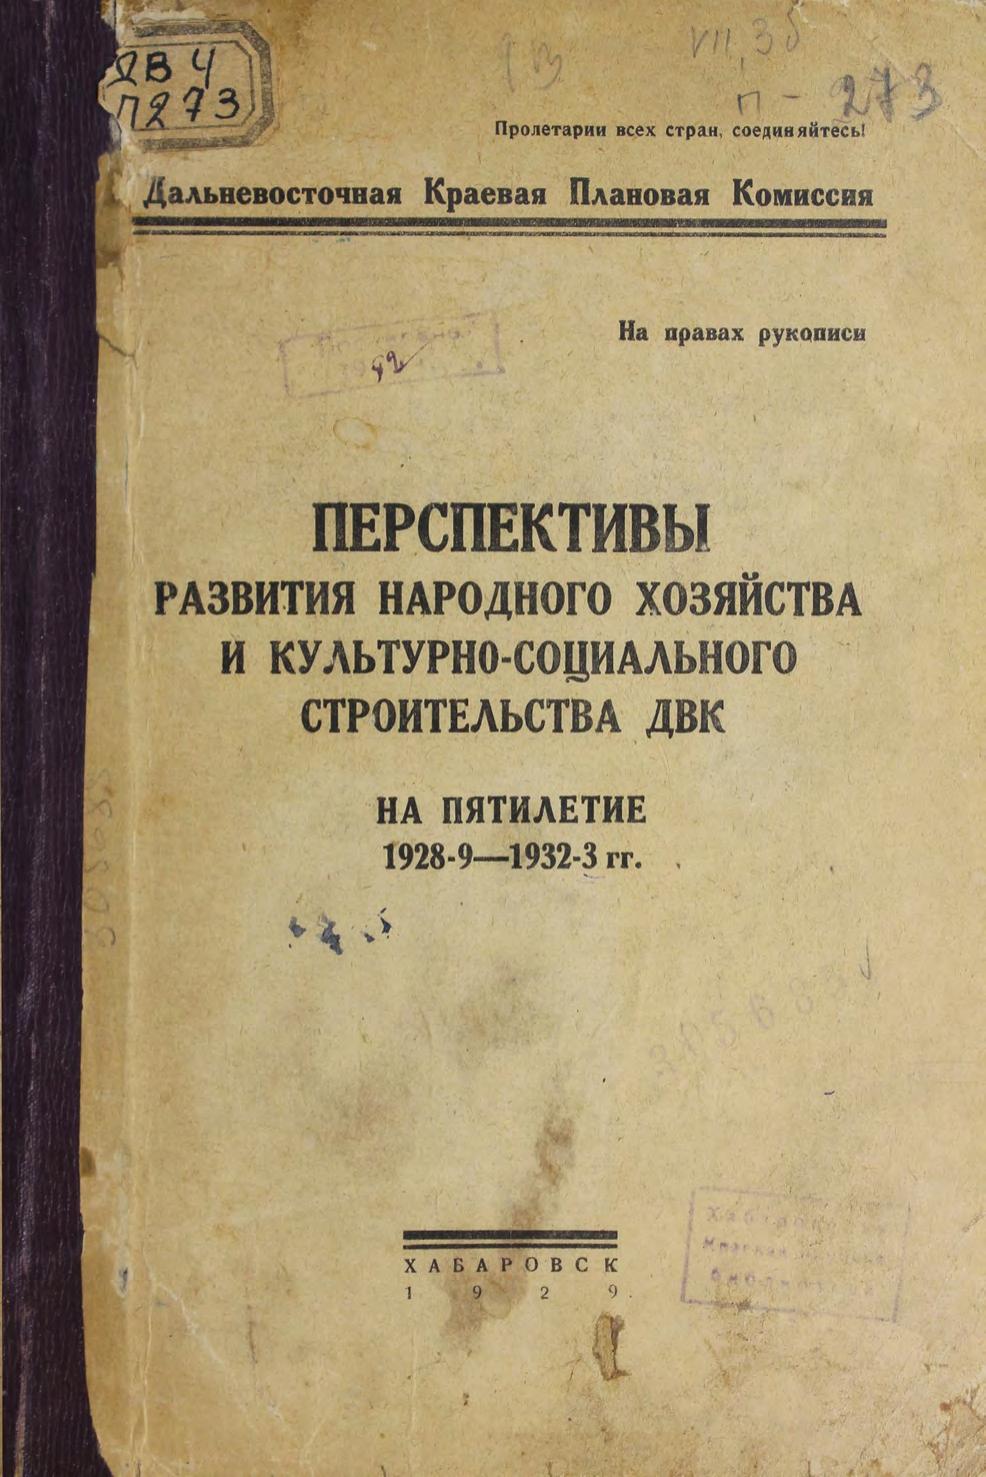 Перспективы развития народного хозяйства и культурно-социального строительства ДВК на пятилетие 1928-1933 гг.